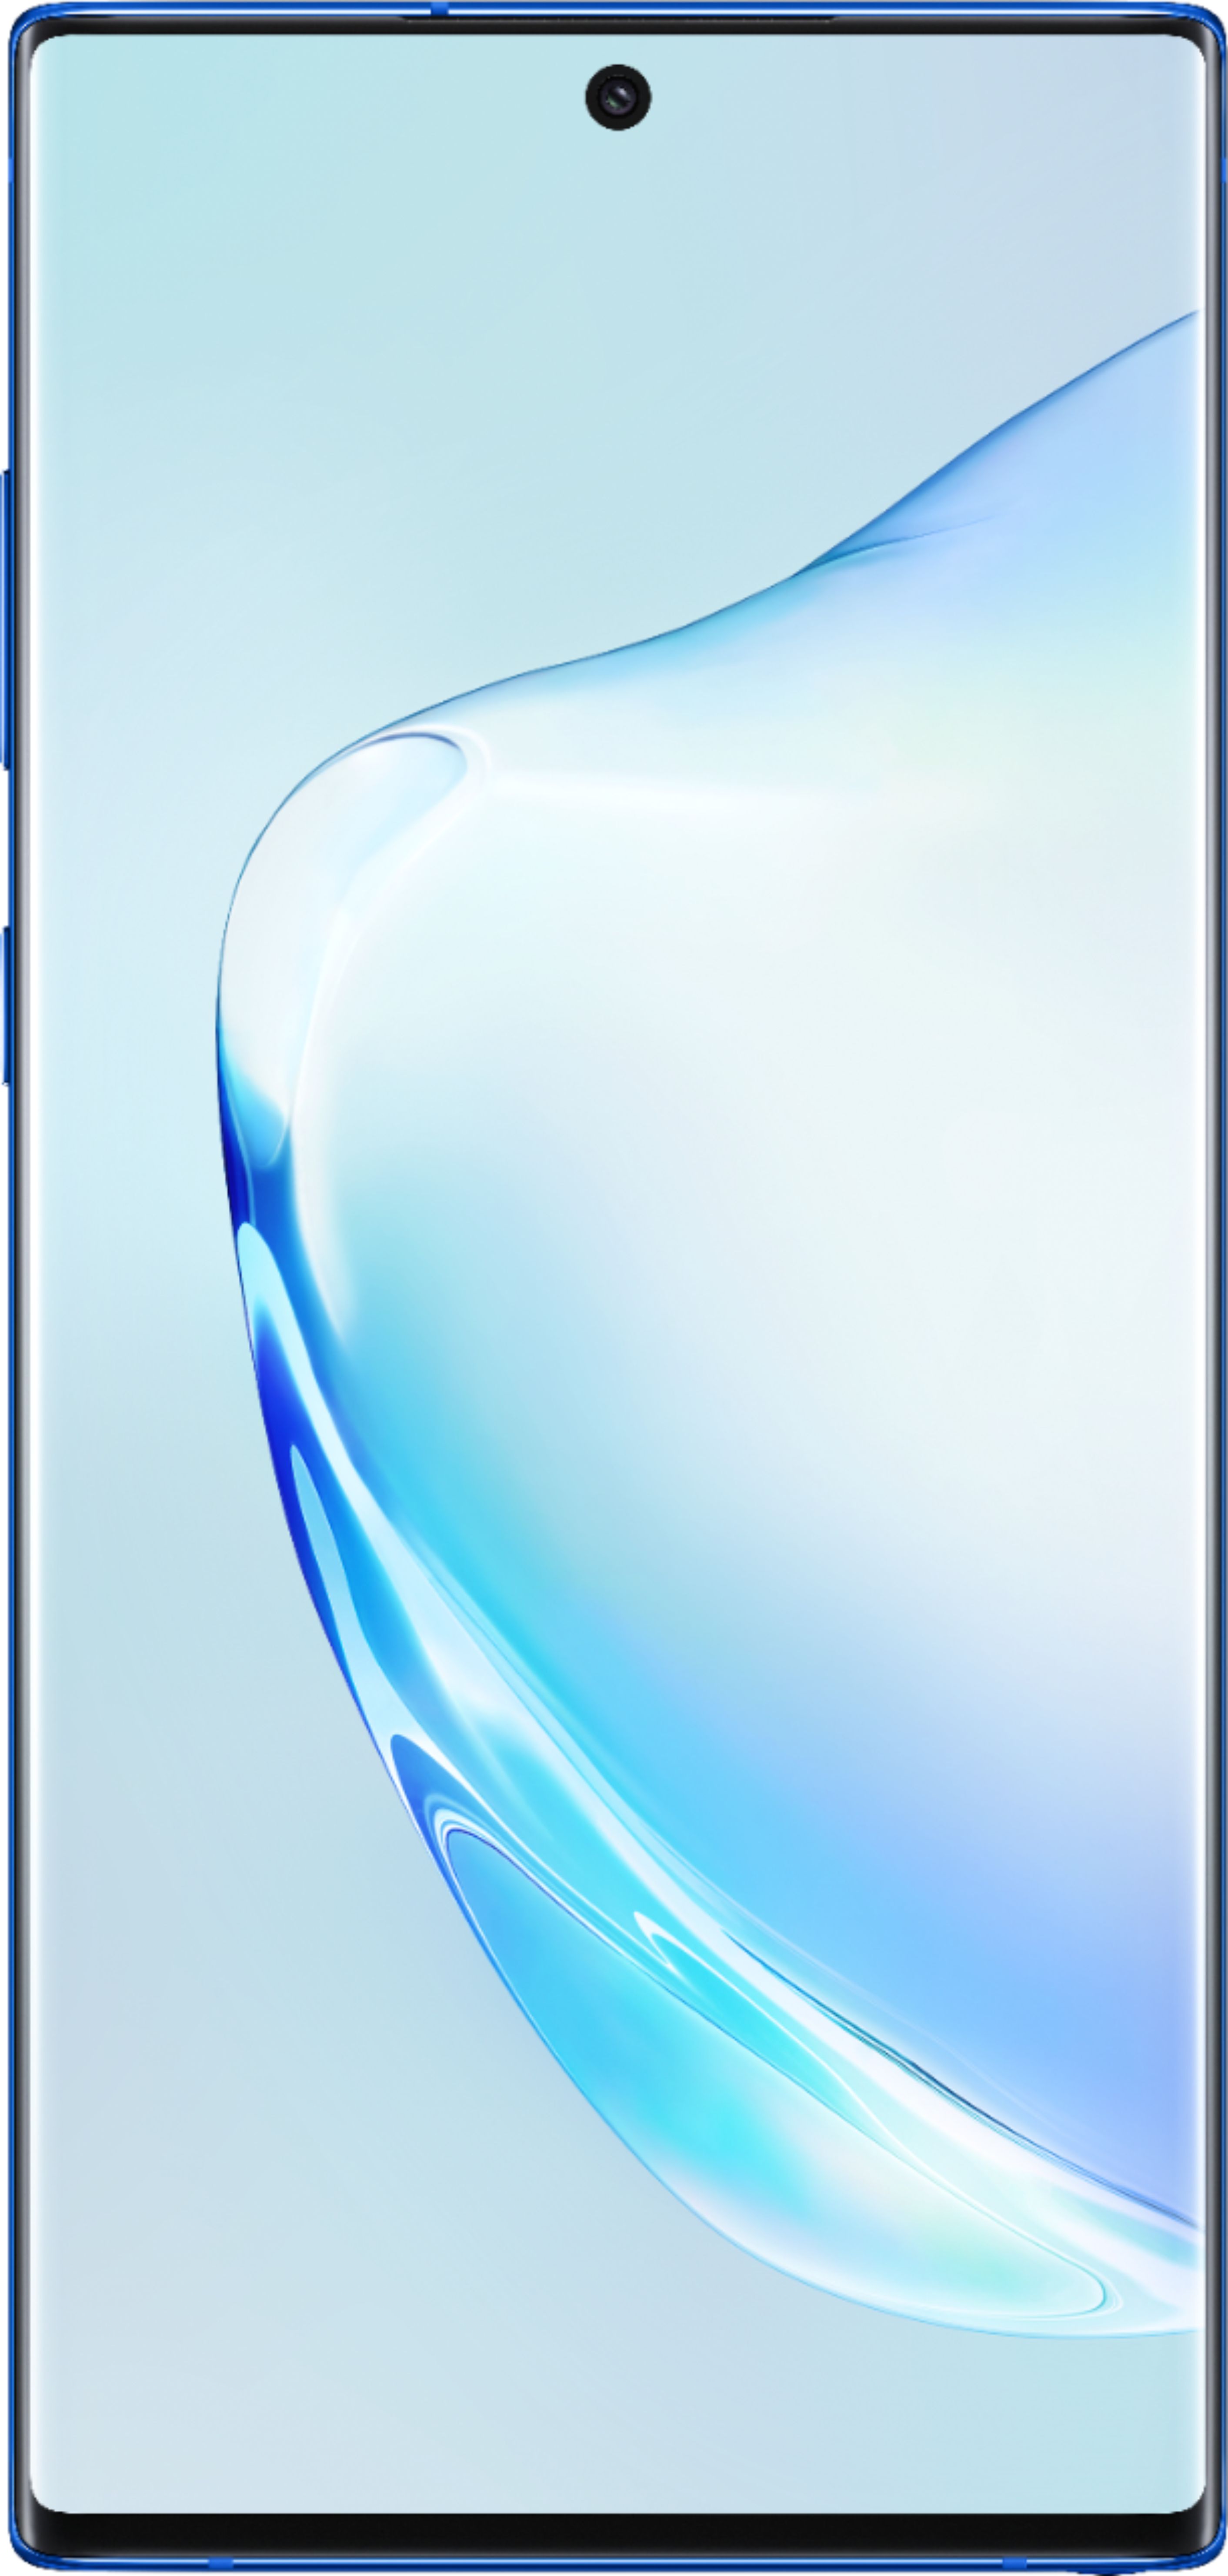 Samsung Galaxy Note 10 / Note 10+ (N970U/N975U) - Signal & Cellular Data -  AT&T